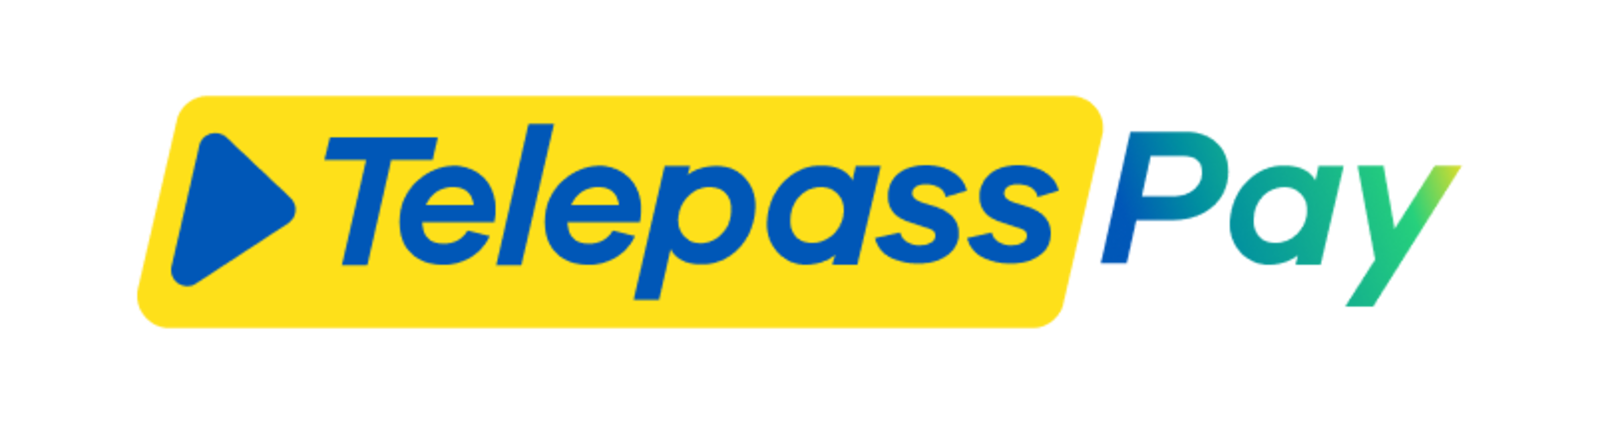 telepasspay